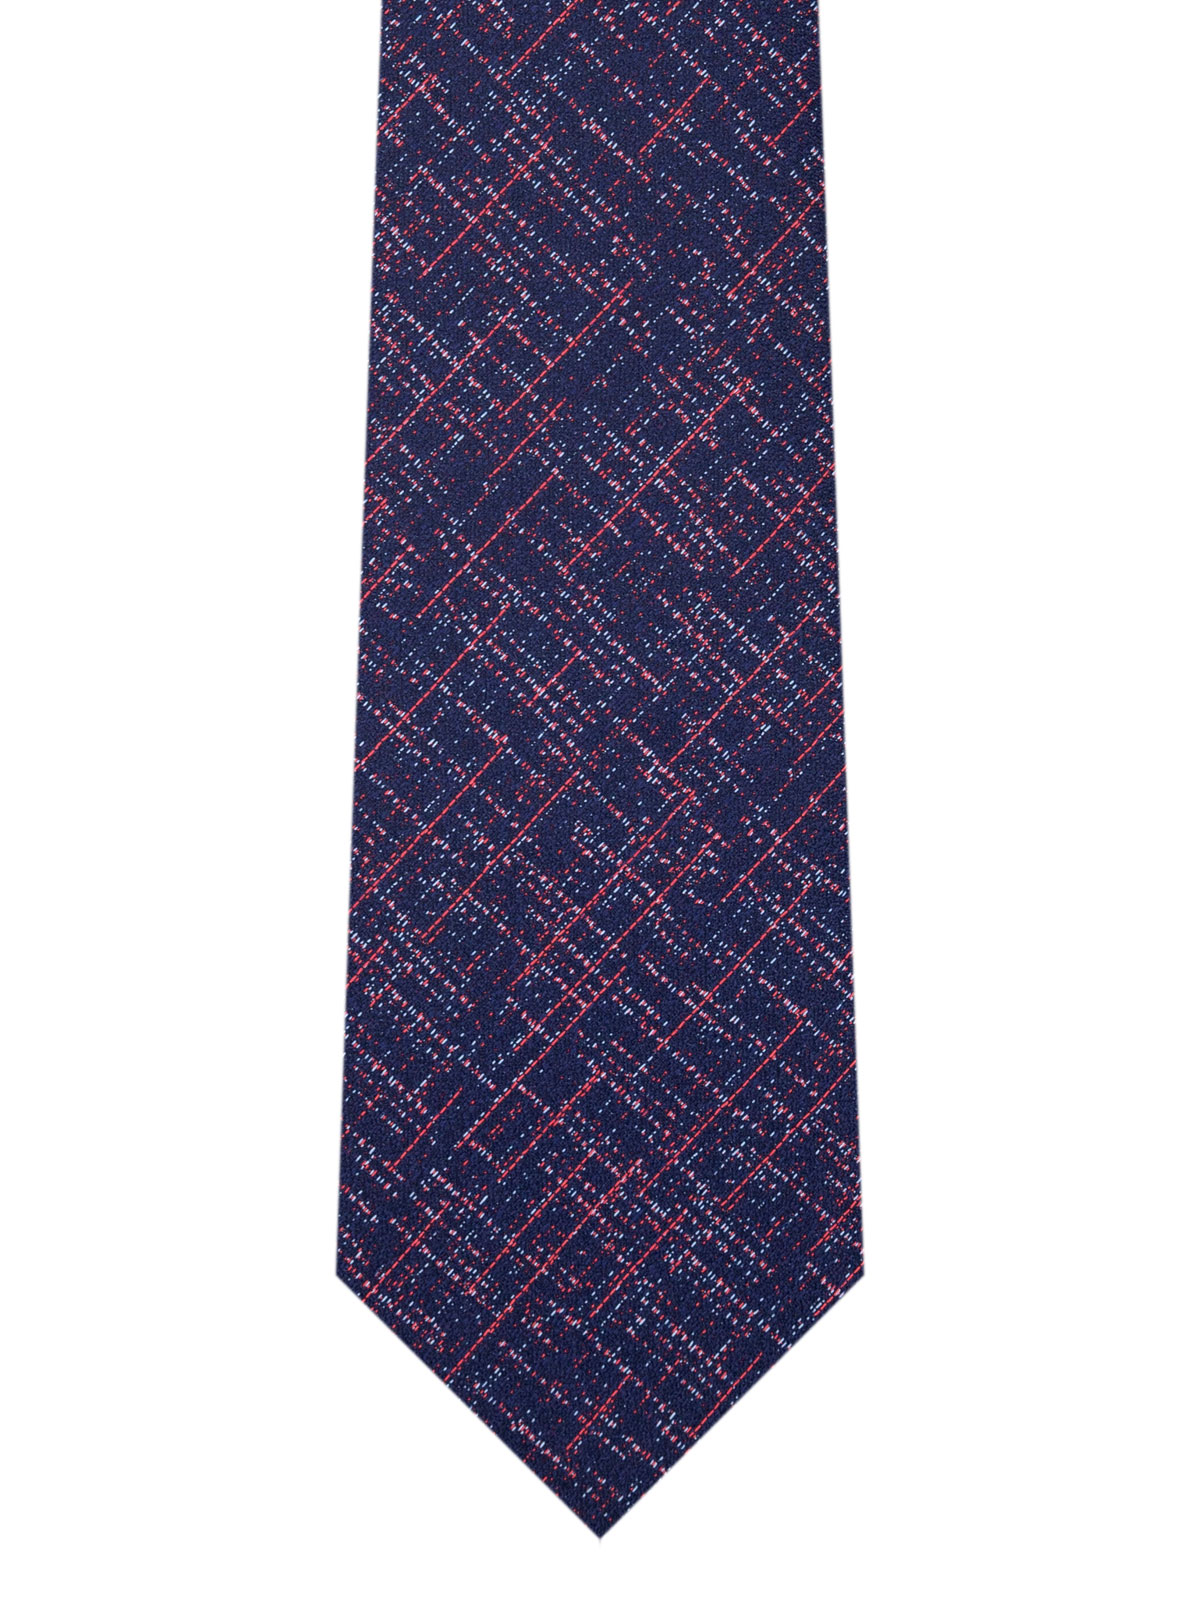 Cravata in albastru cu fire colorate - 10169 - € 14.06 img2